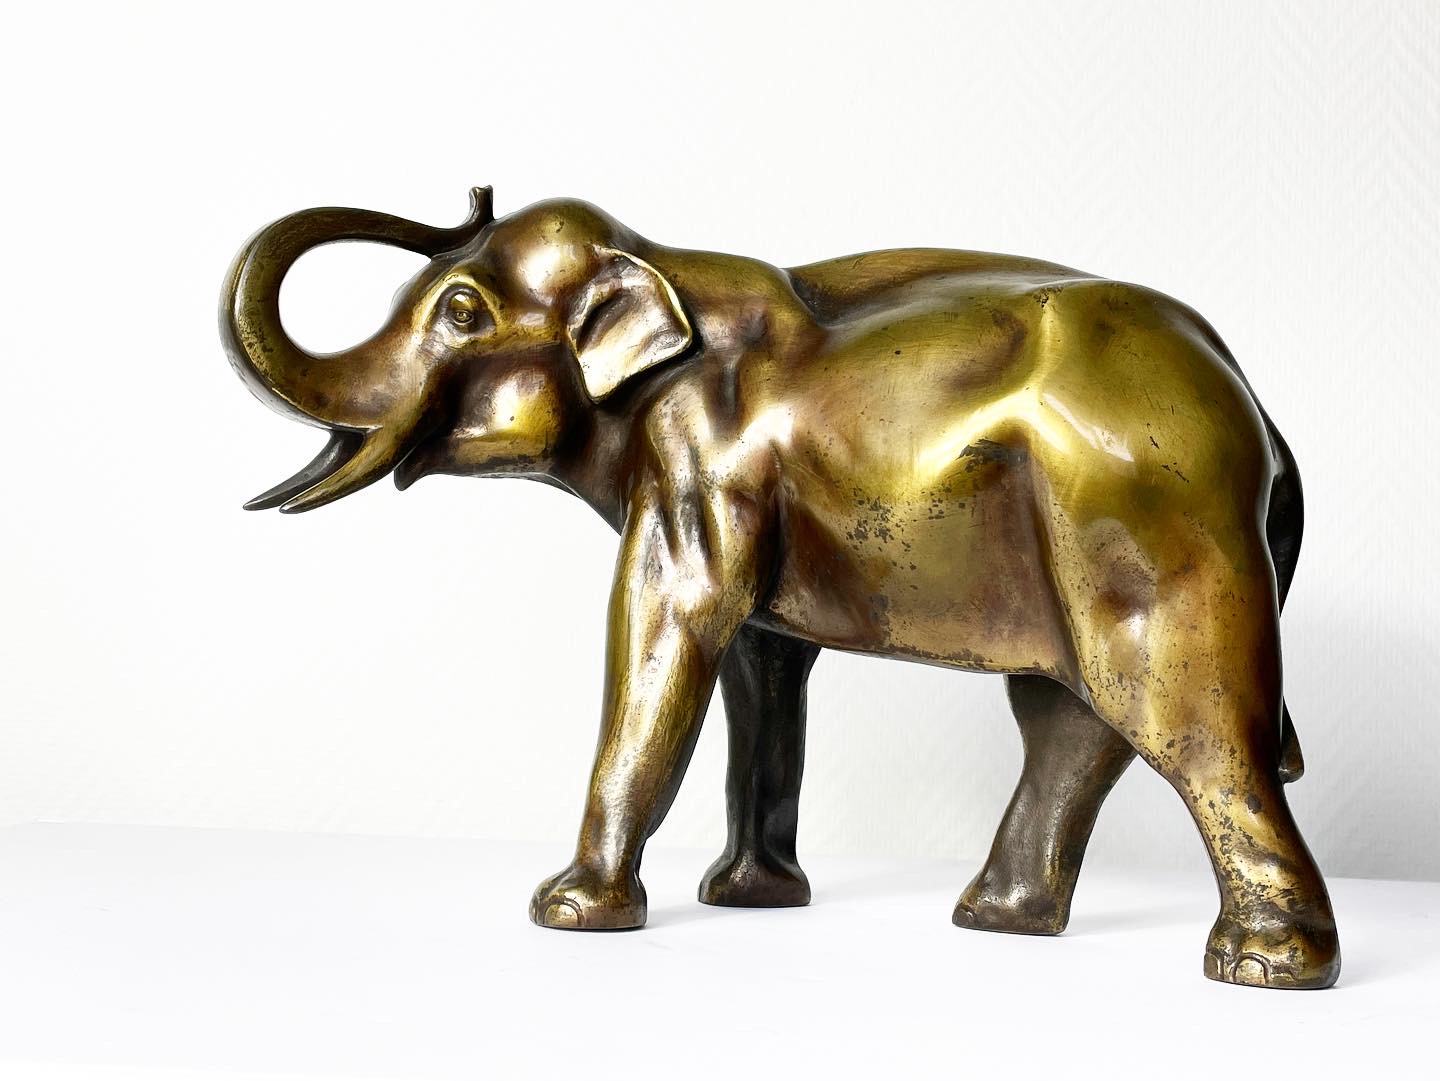 Elephant-sculpture-animalière-bronze-doré-xixe-xxe-aurore-morisse-affaire-conclue-chestret5-liège-paris4